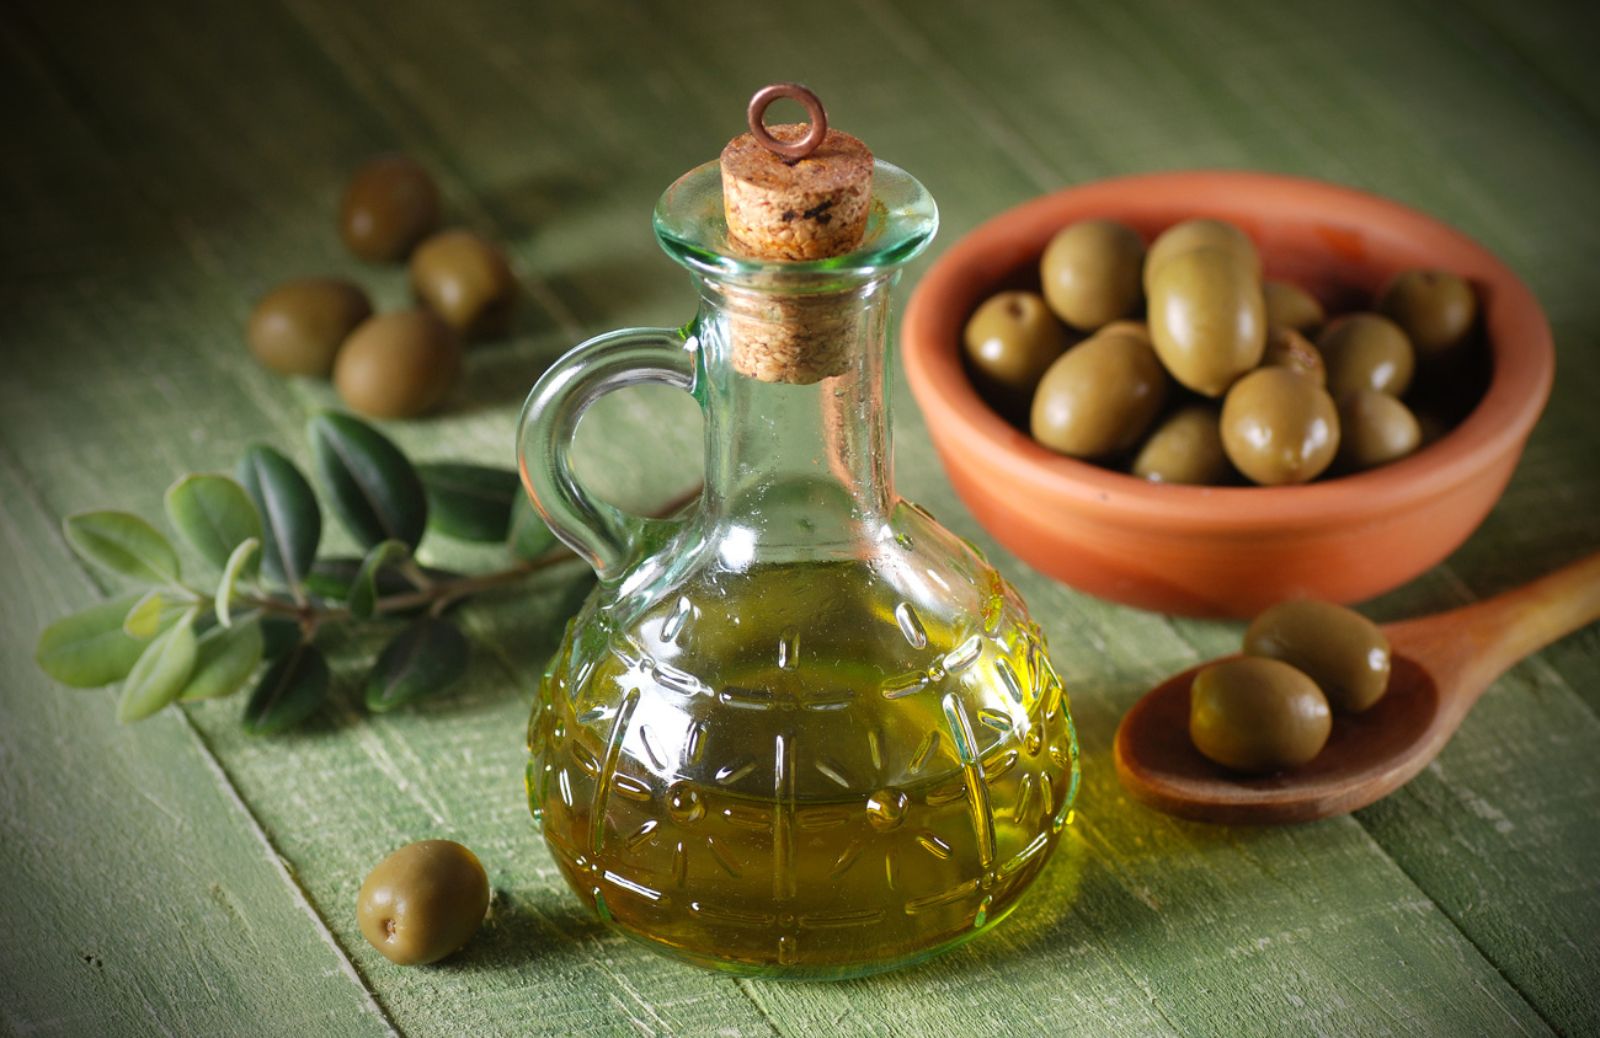 Diabete: l’olio extravergine d’oliva aiuta a ridurre la glicemia dopo i pasti